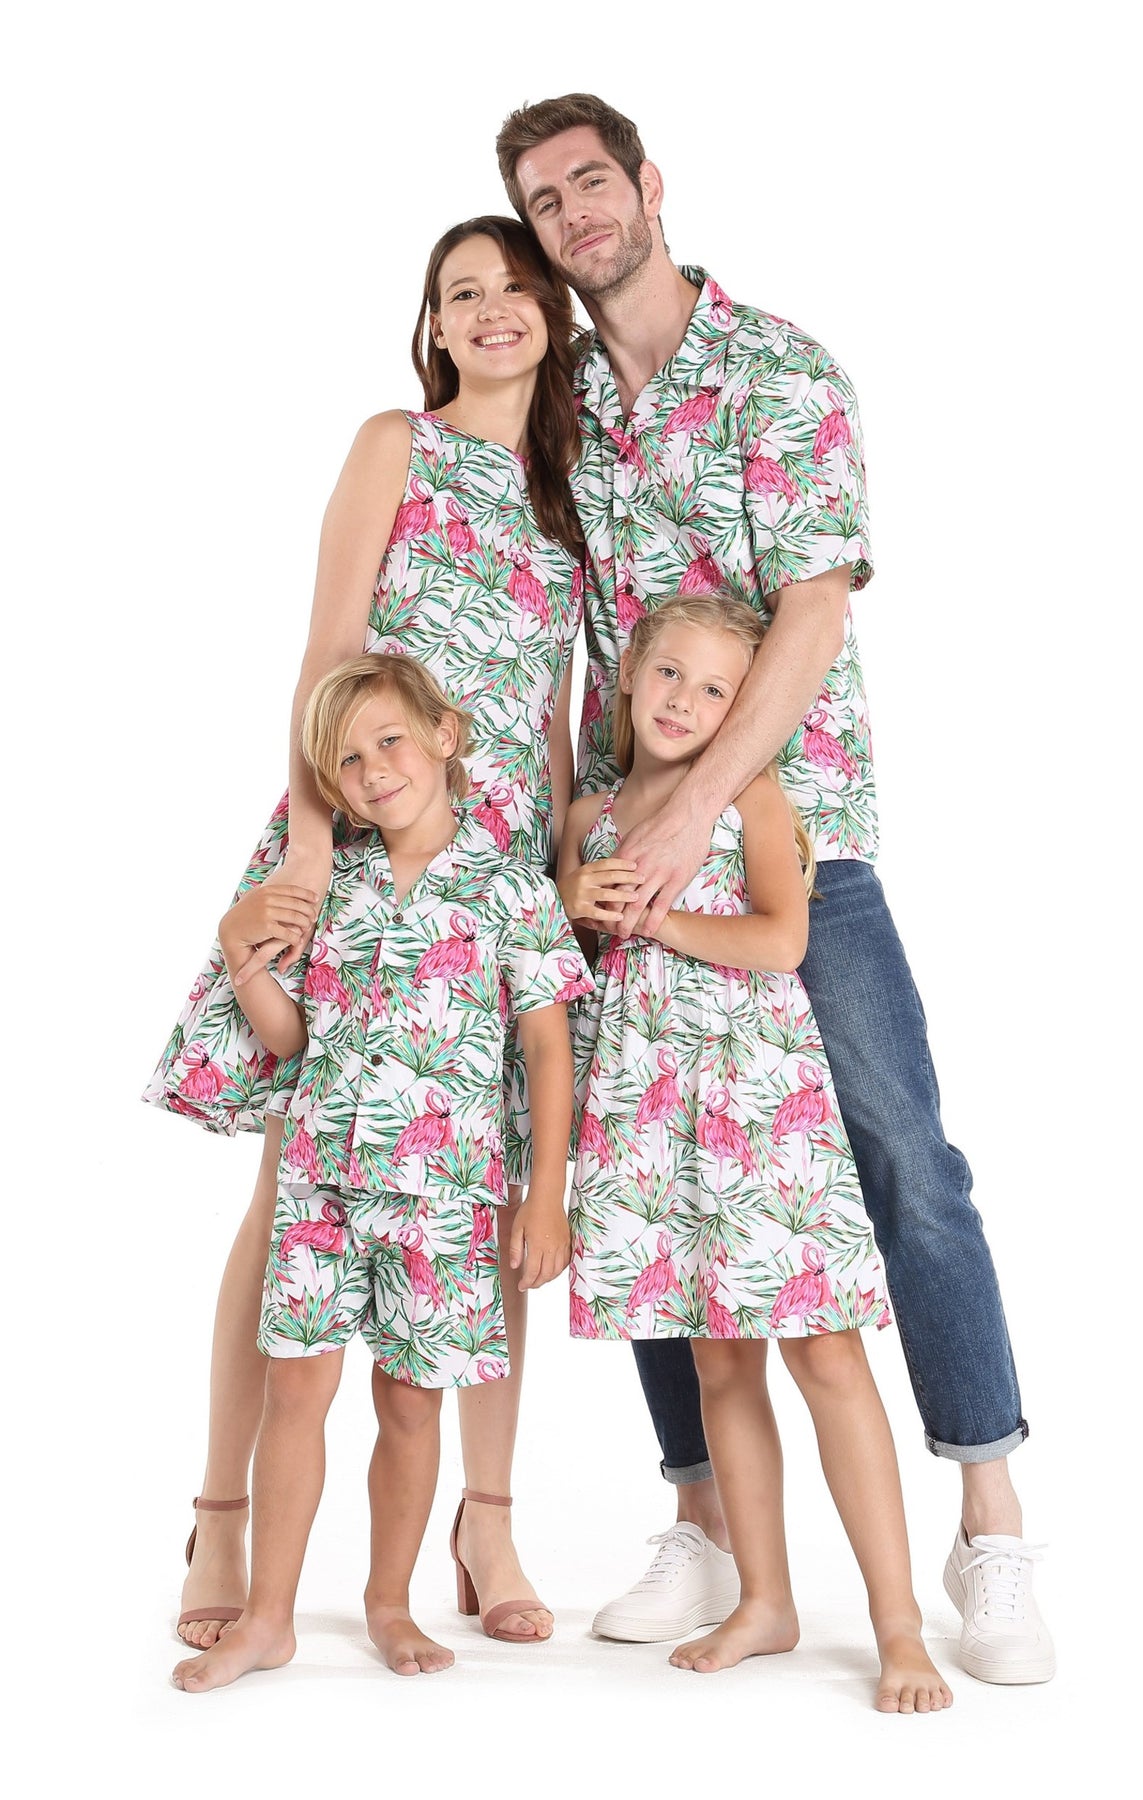 Hawaii Hangover Matching Father Son Hawaiian Luau Outfit Men Shirt Boy Shirt Shorts Flamingo in Love 3xl-6, Men's, Size: Men 3XL + Boy 6, White